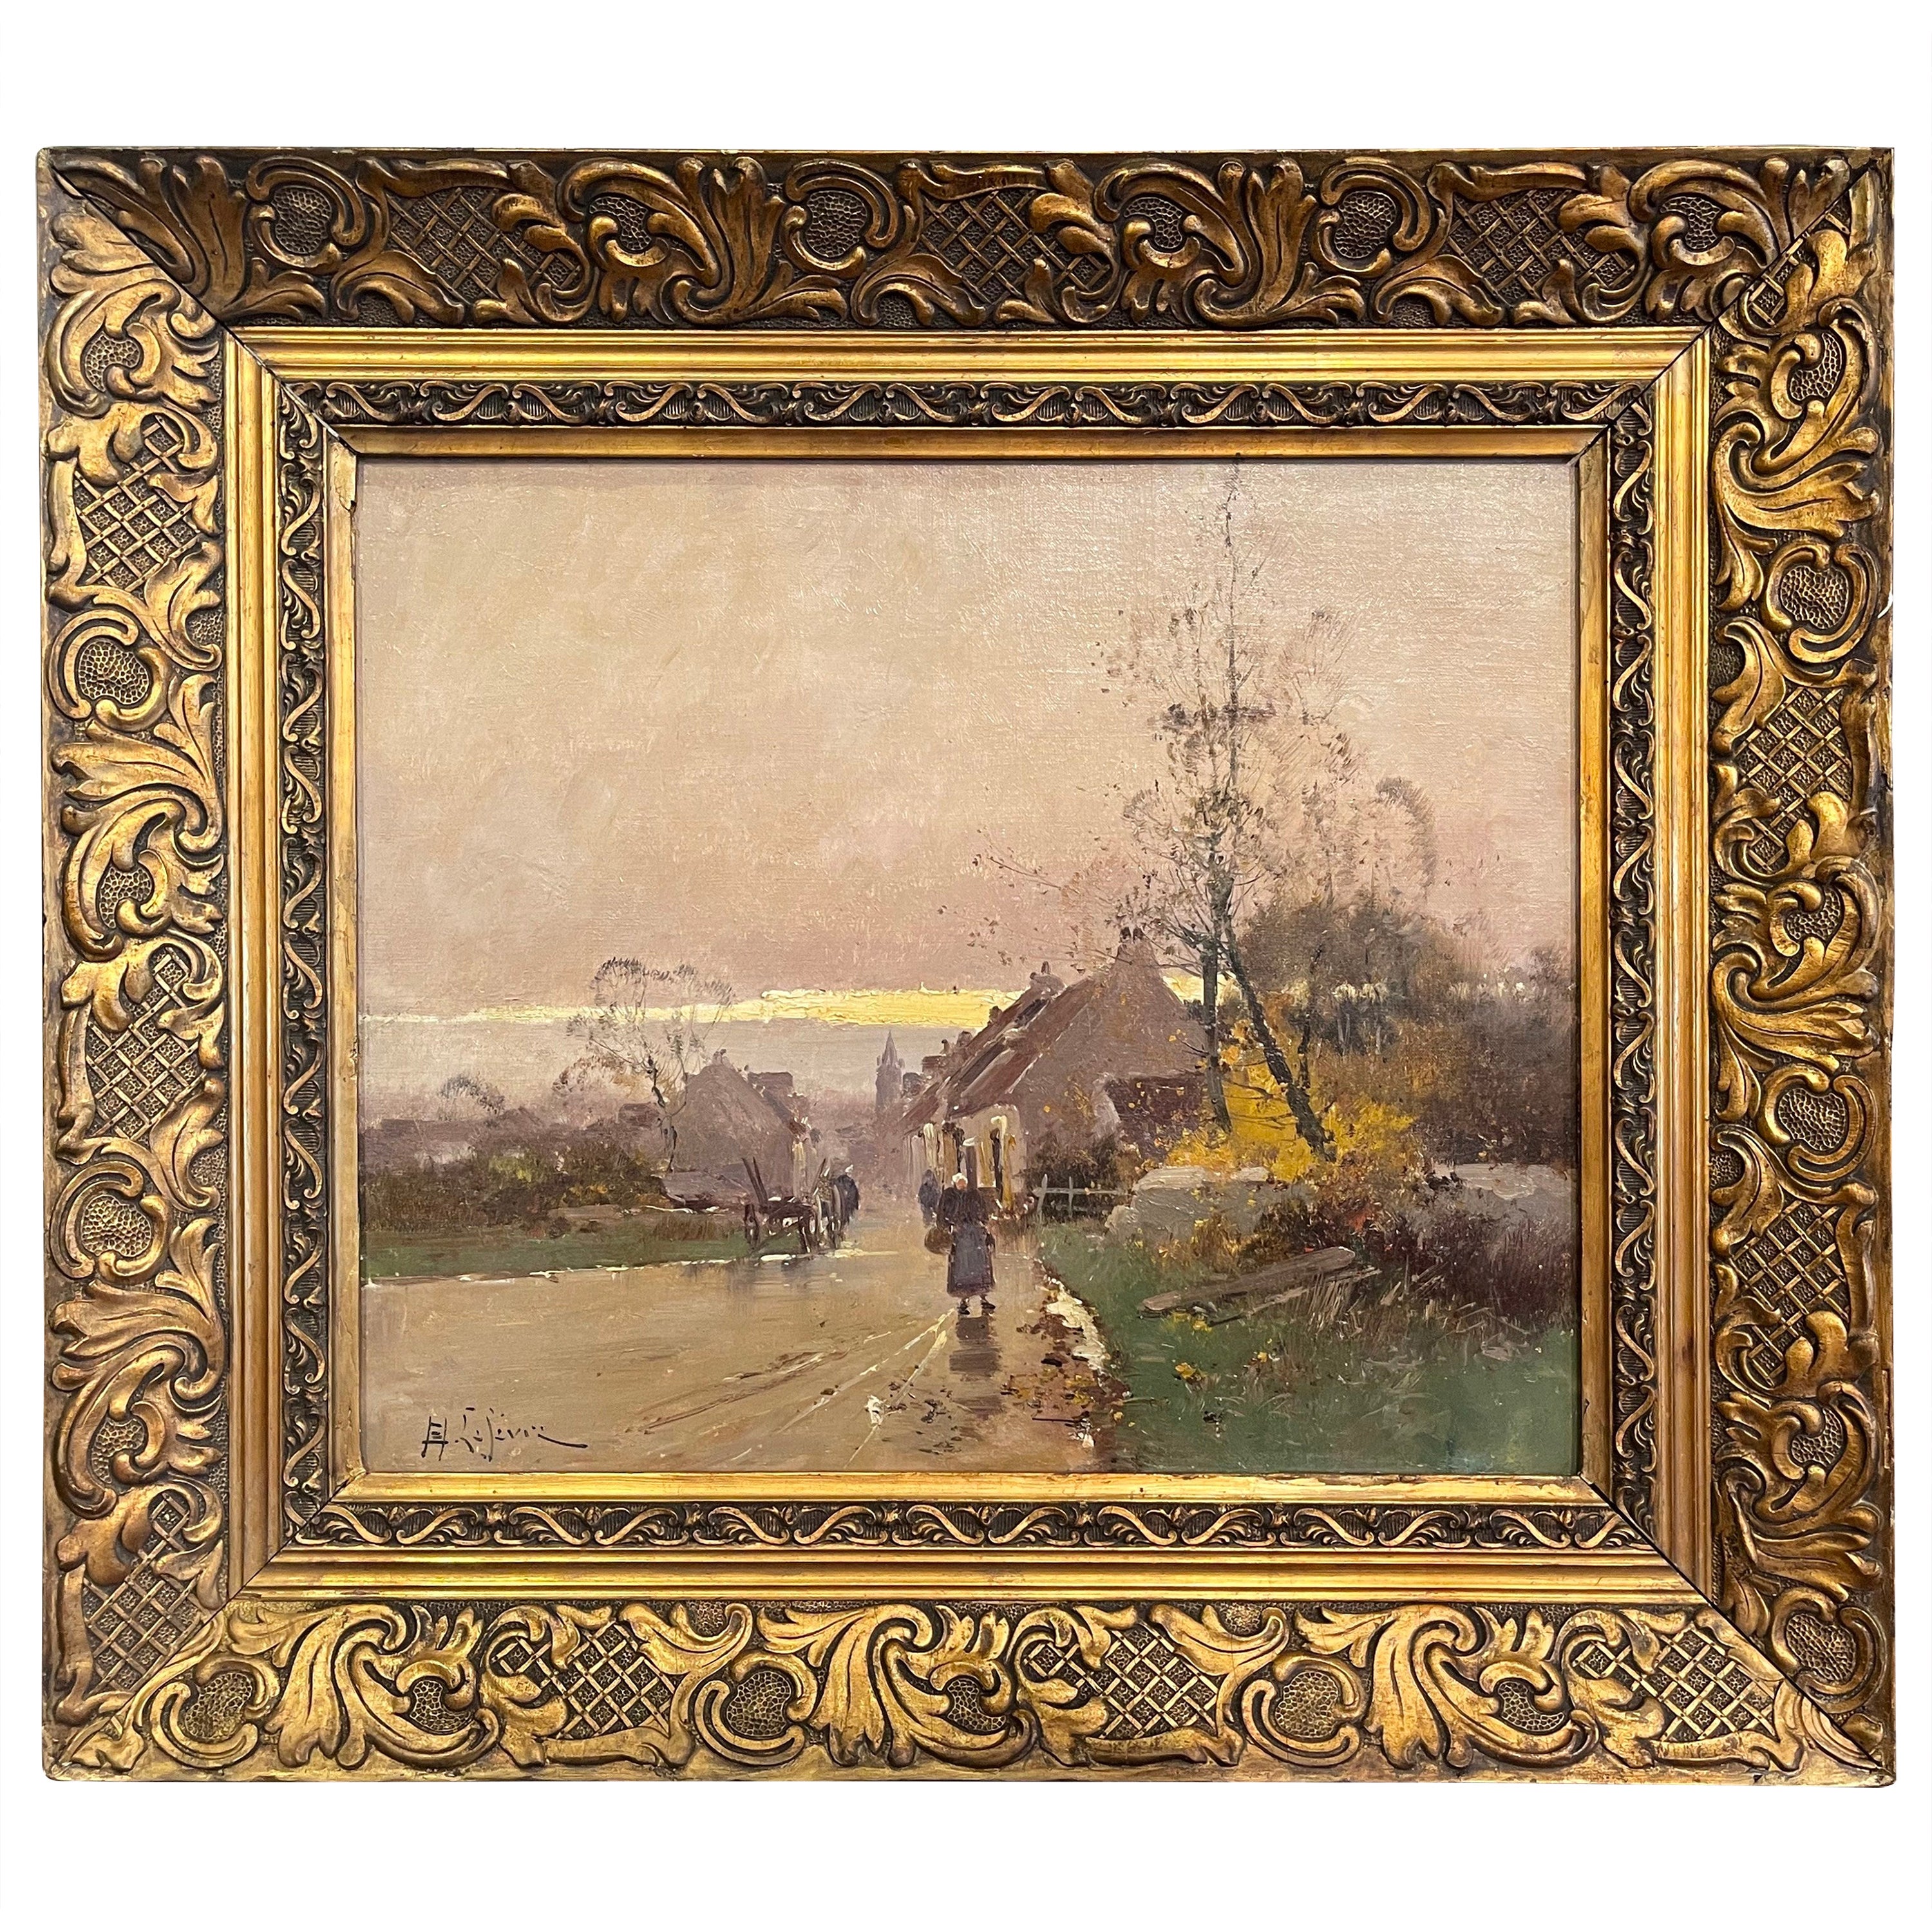 19th Century Framed Pastoral Oil Painting Signed E Lefevre for E. Galien-Laloue